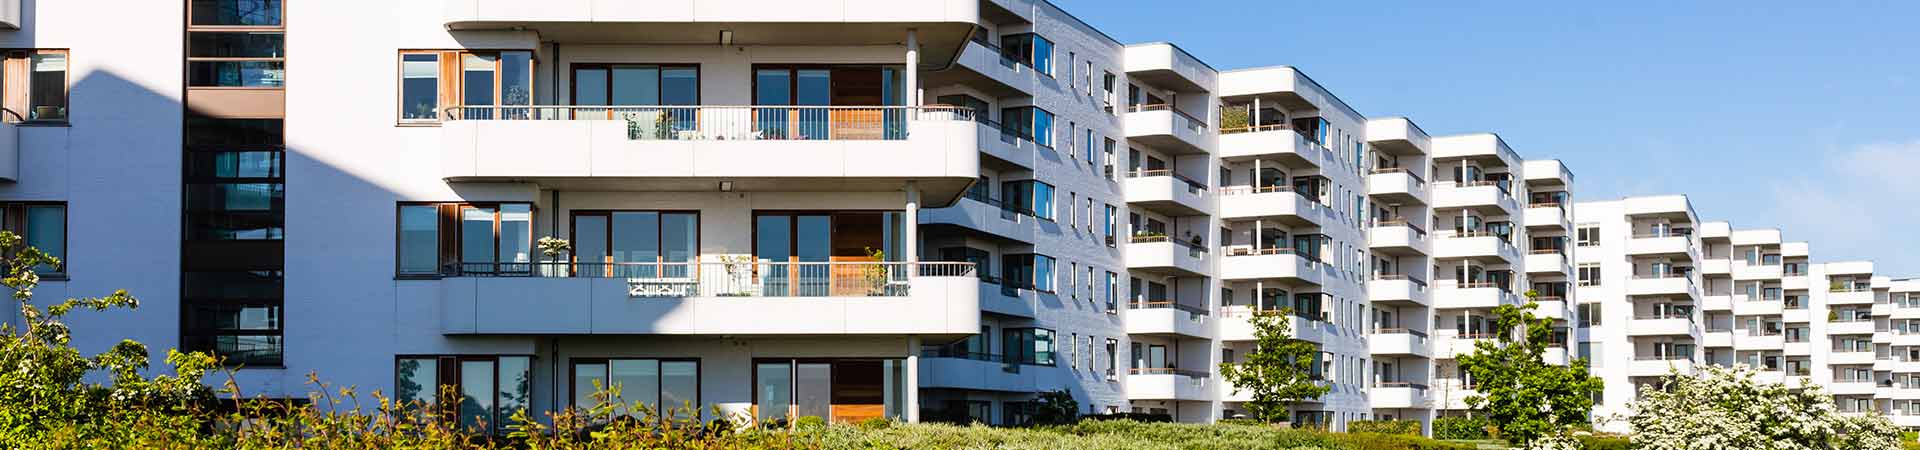 Instalaciones centralizadas para Climatización de edificios de viviendas